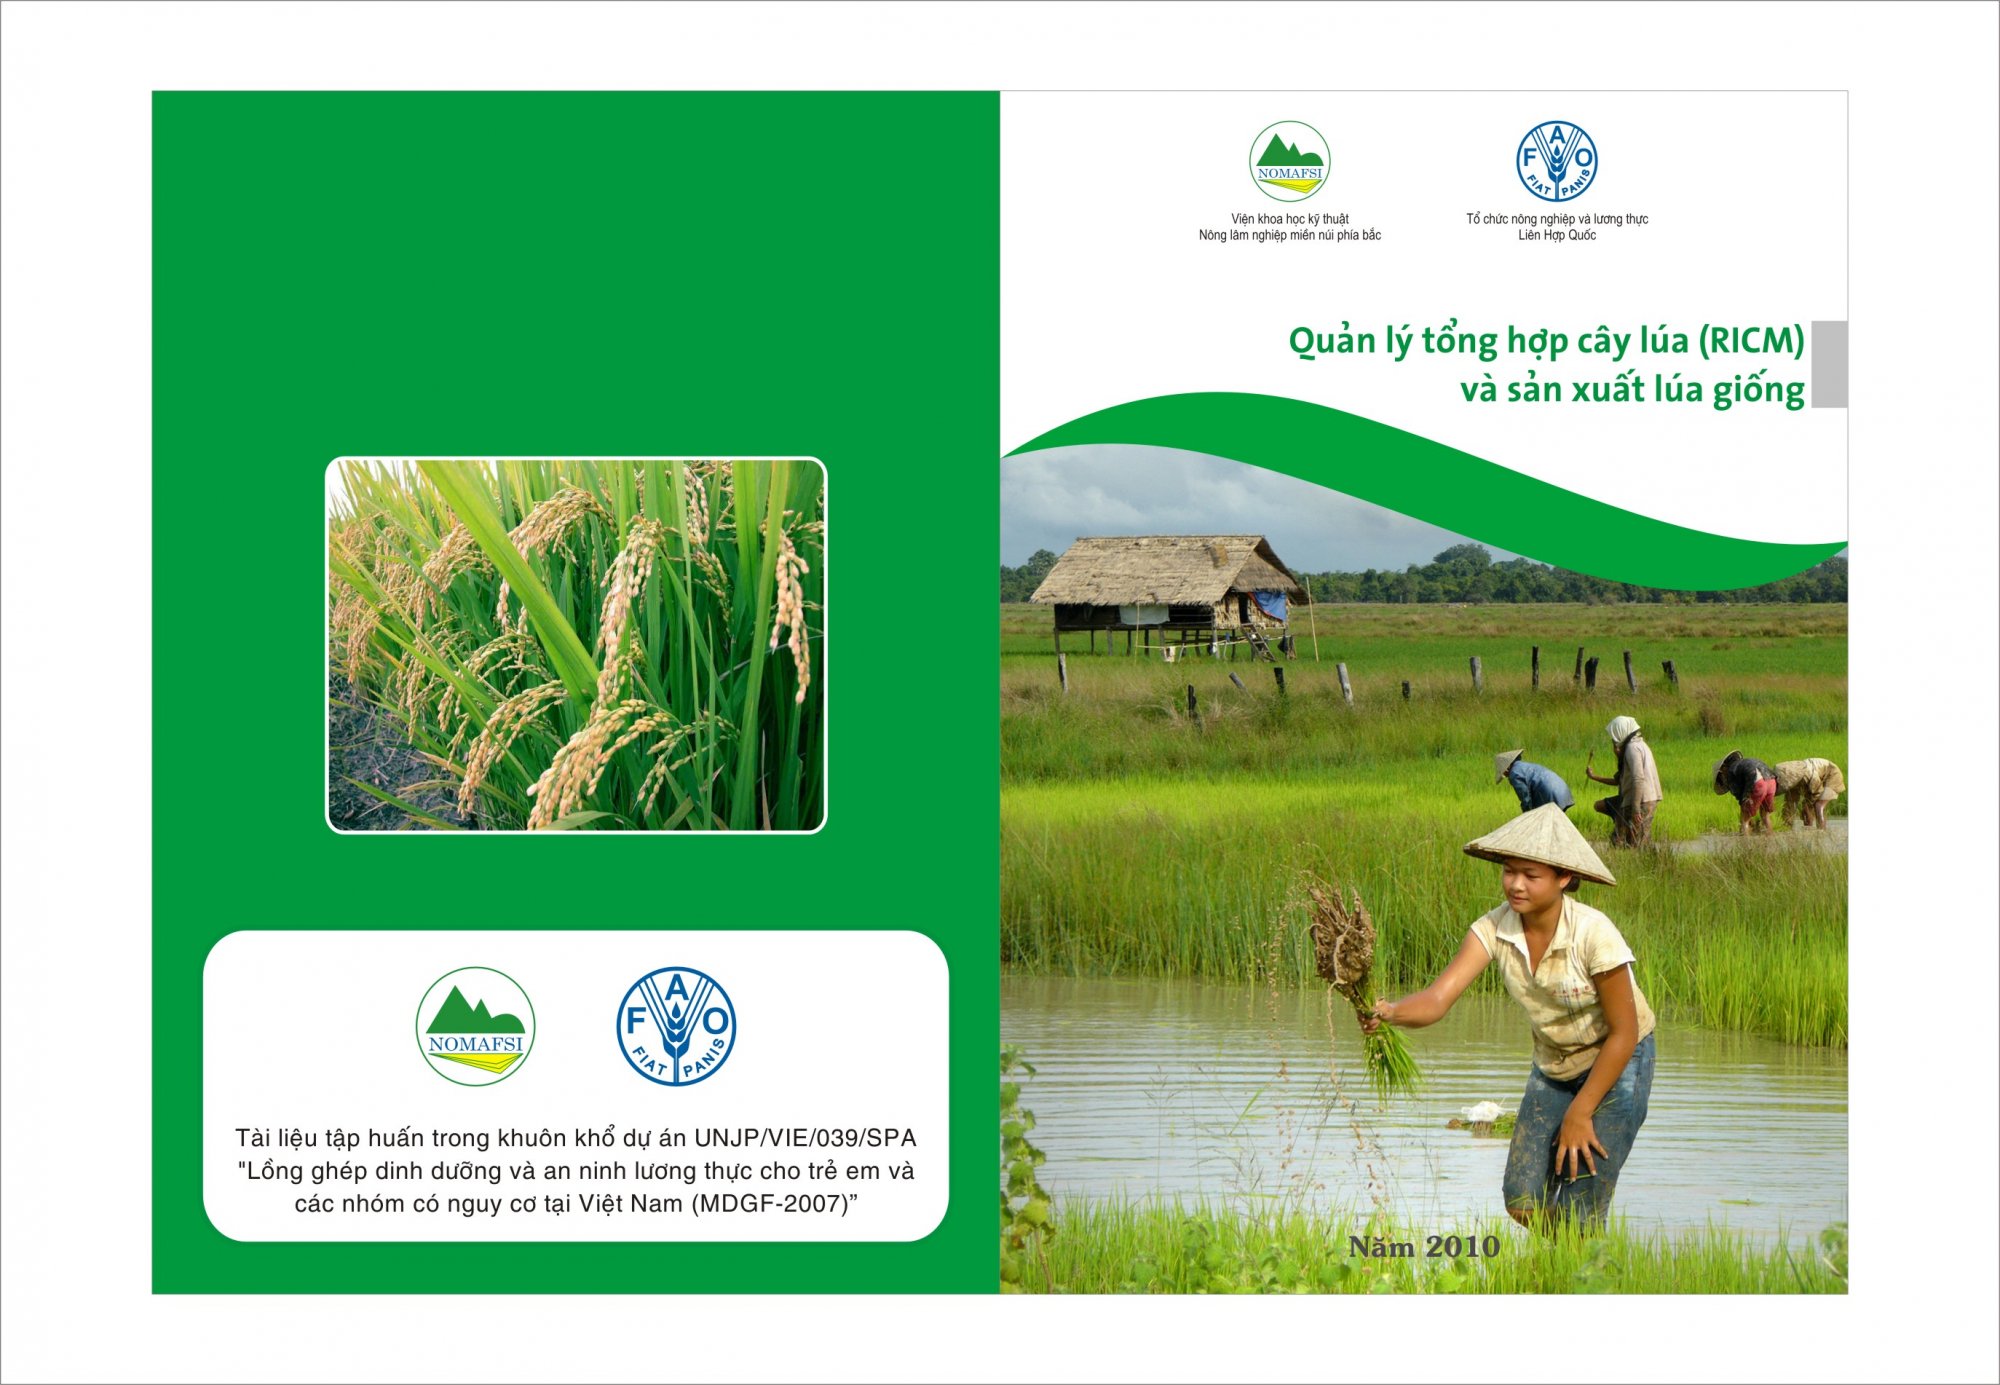 Tài liệu kỹ thuật: Quản lý tổng hợp cây lúa (RICM) và Sản xuất lúa giống